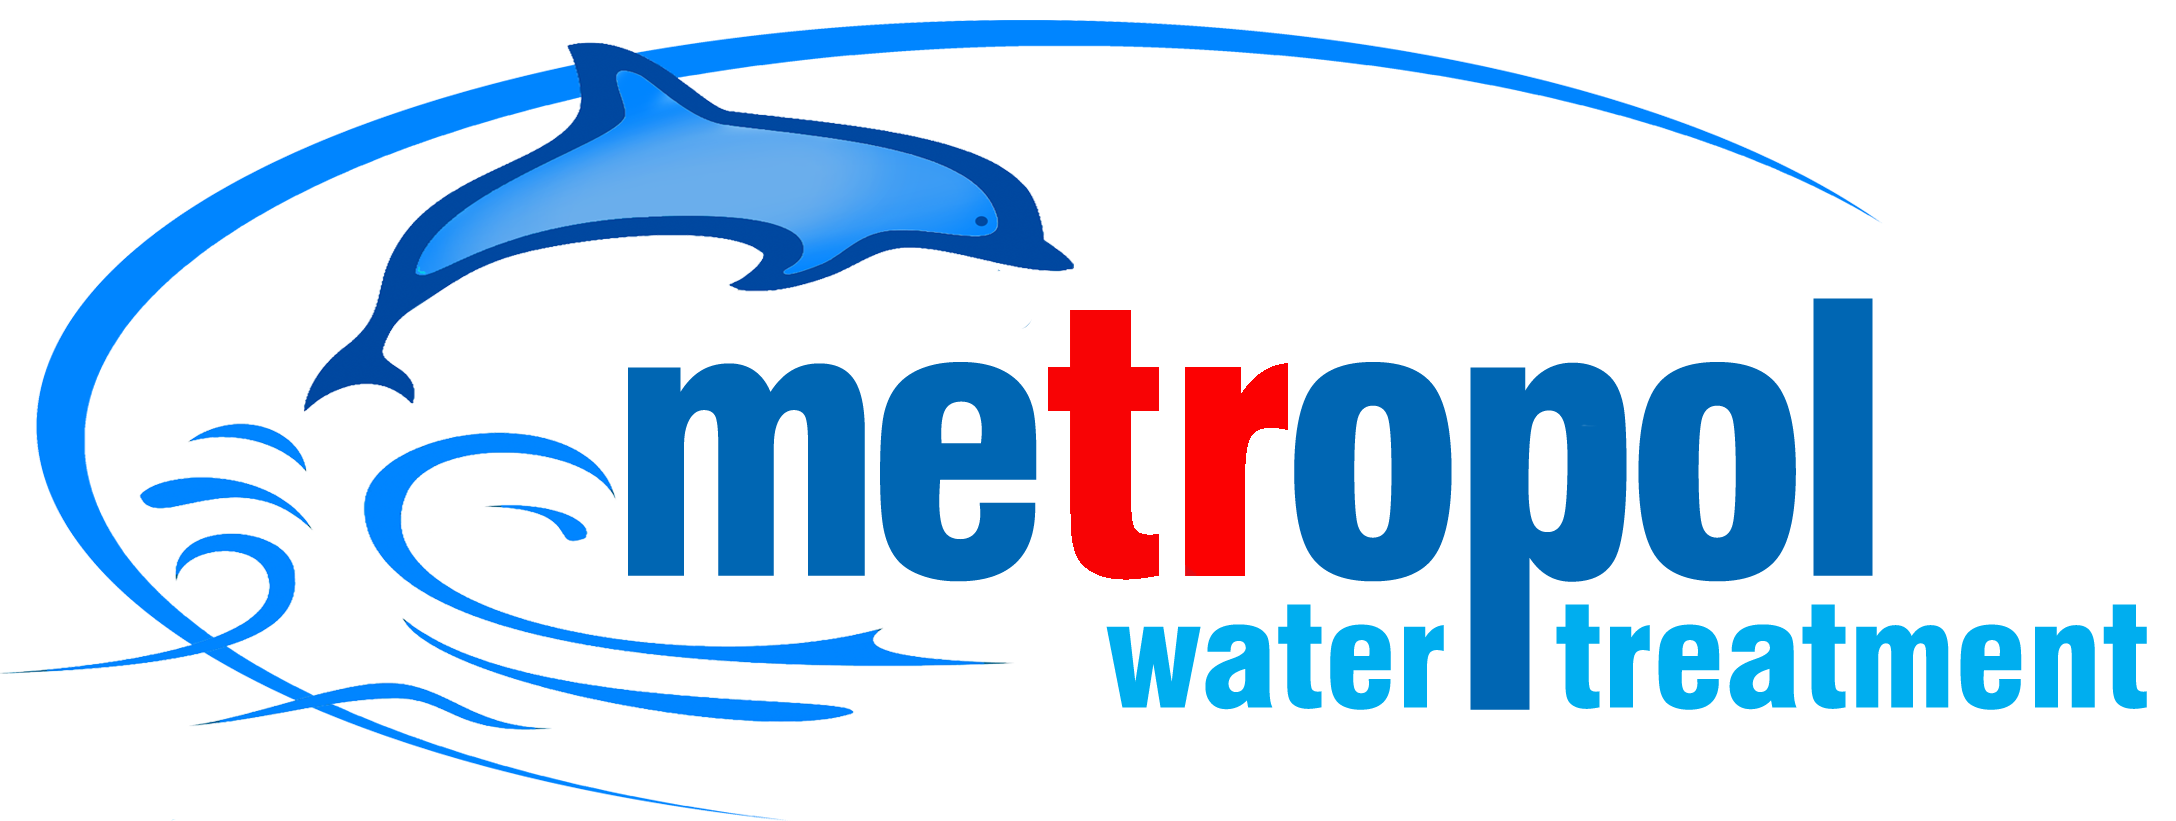 7 Aşamalı Pompasız Su Arıtma Cihazı - Metropol Su Arıtma Cİhazları- Ev Tipi- Toptan ve Perakende Su Arıtma Cİhazları